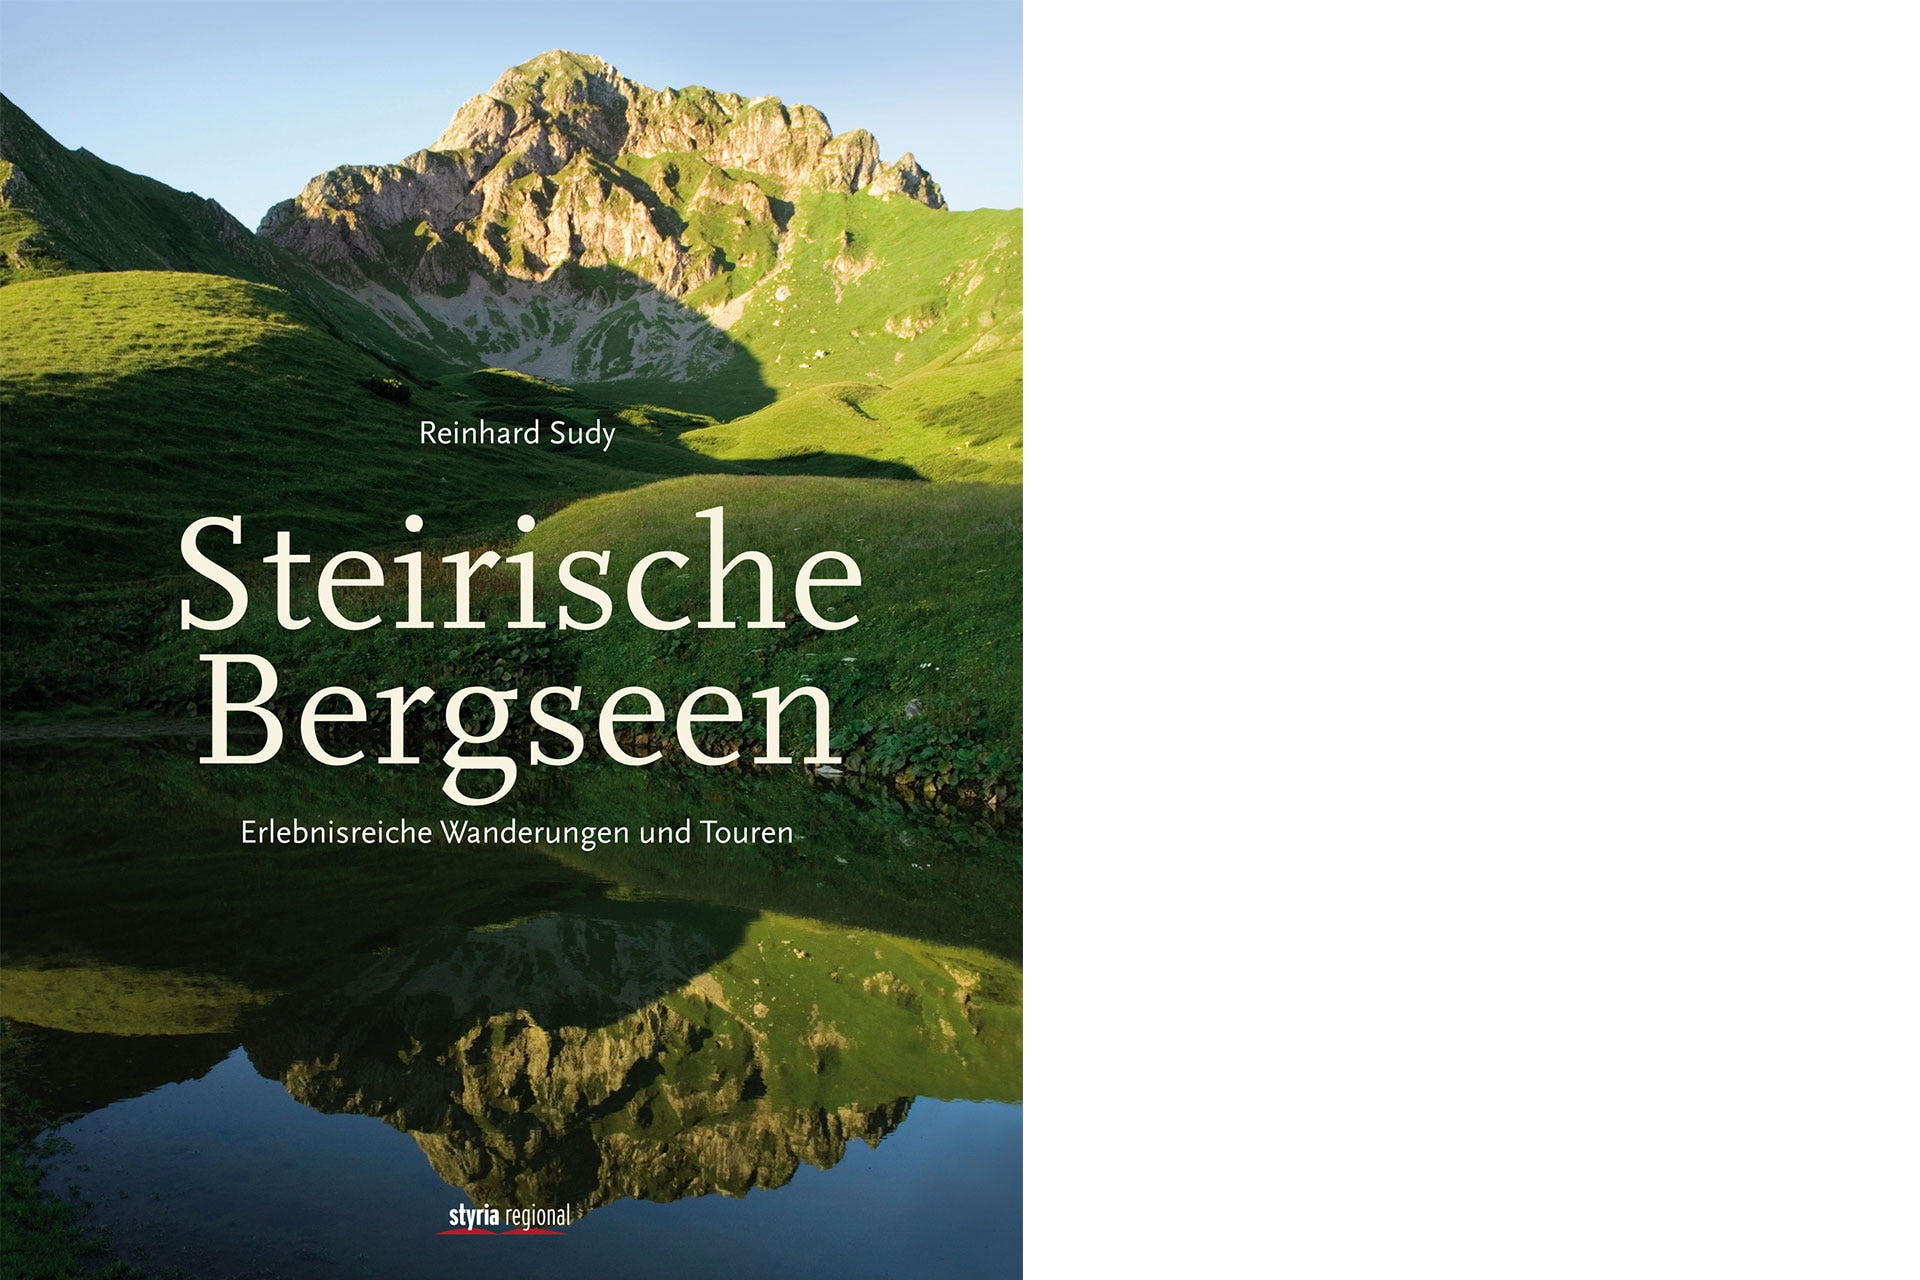 Bergseen-Paradies Steiermark: 5 der schönsten Lacken